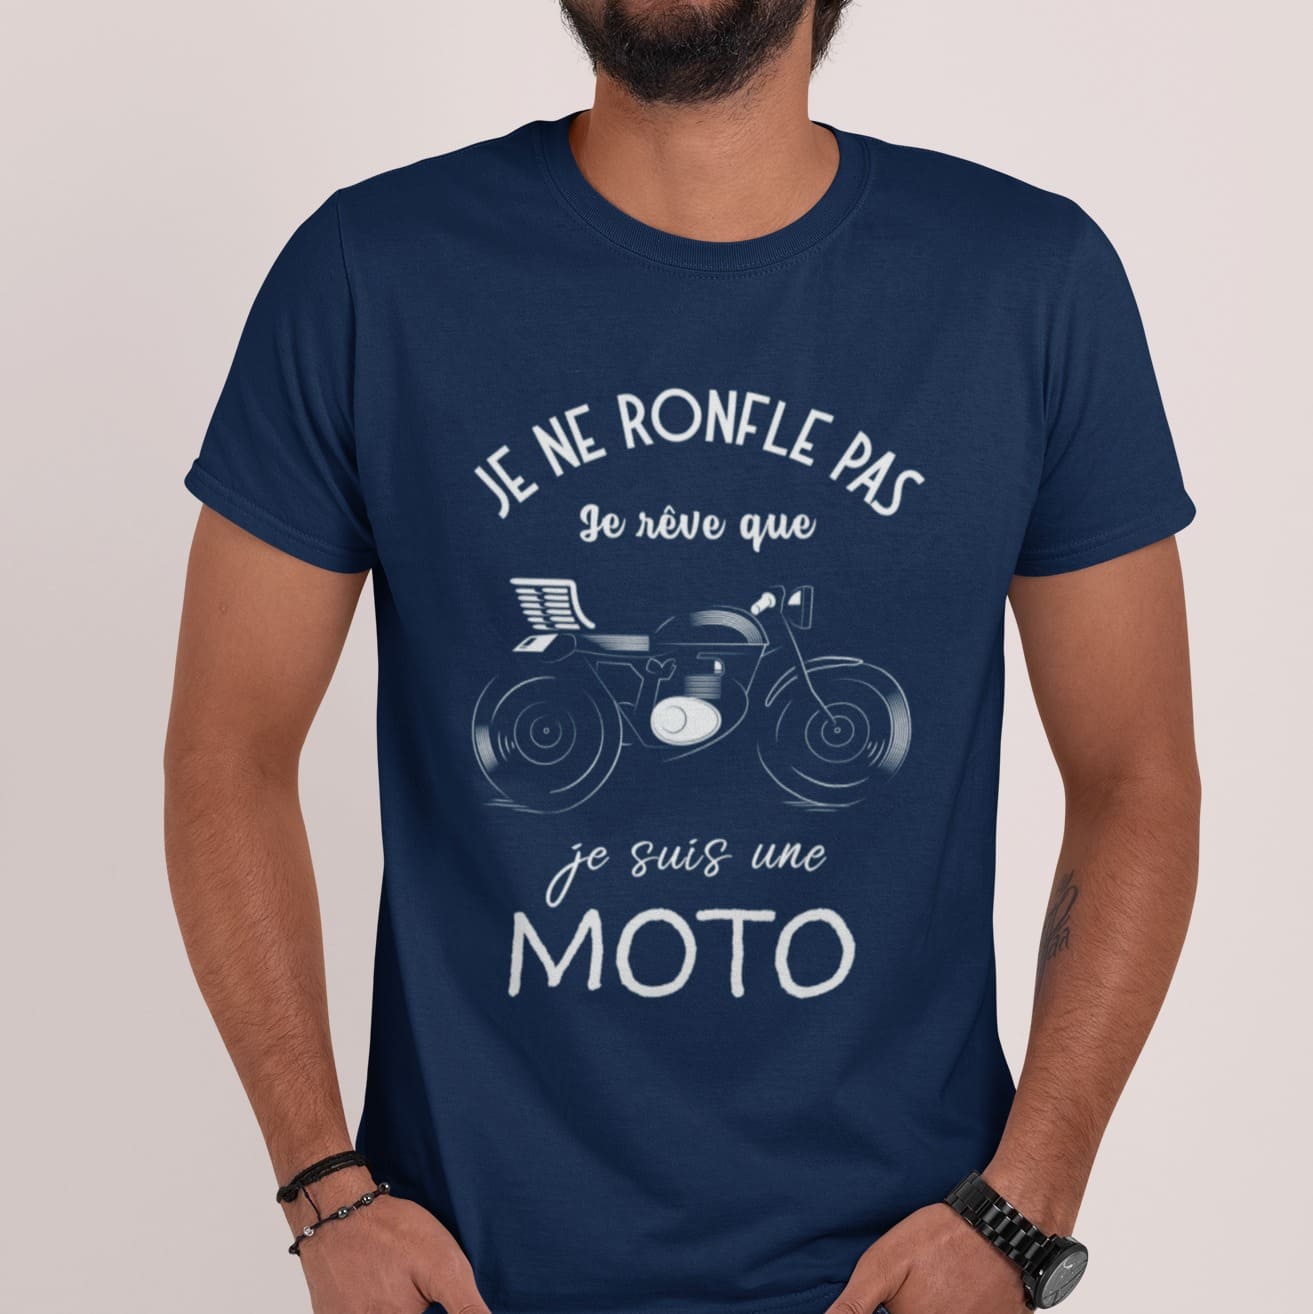 Motorcycle Graphic T-shirt - Je ne ronfle pas je reve que je suis une moto